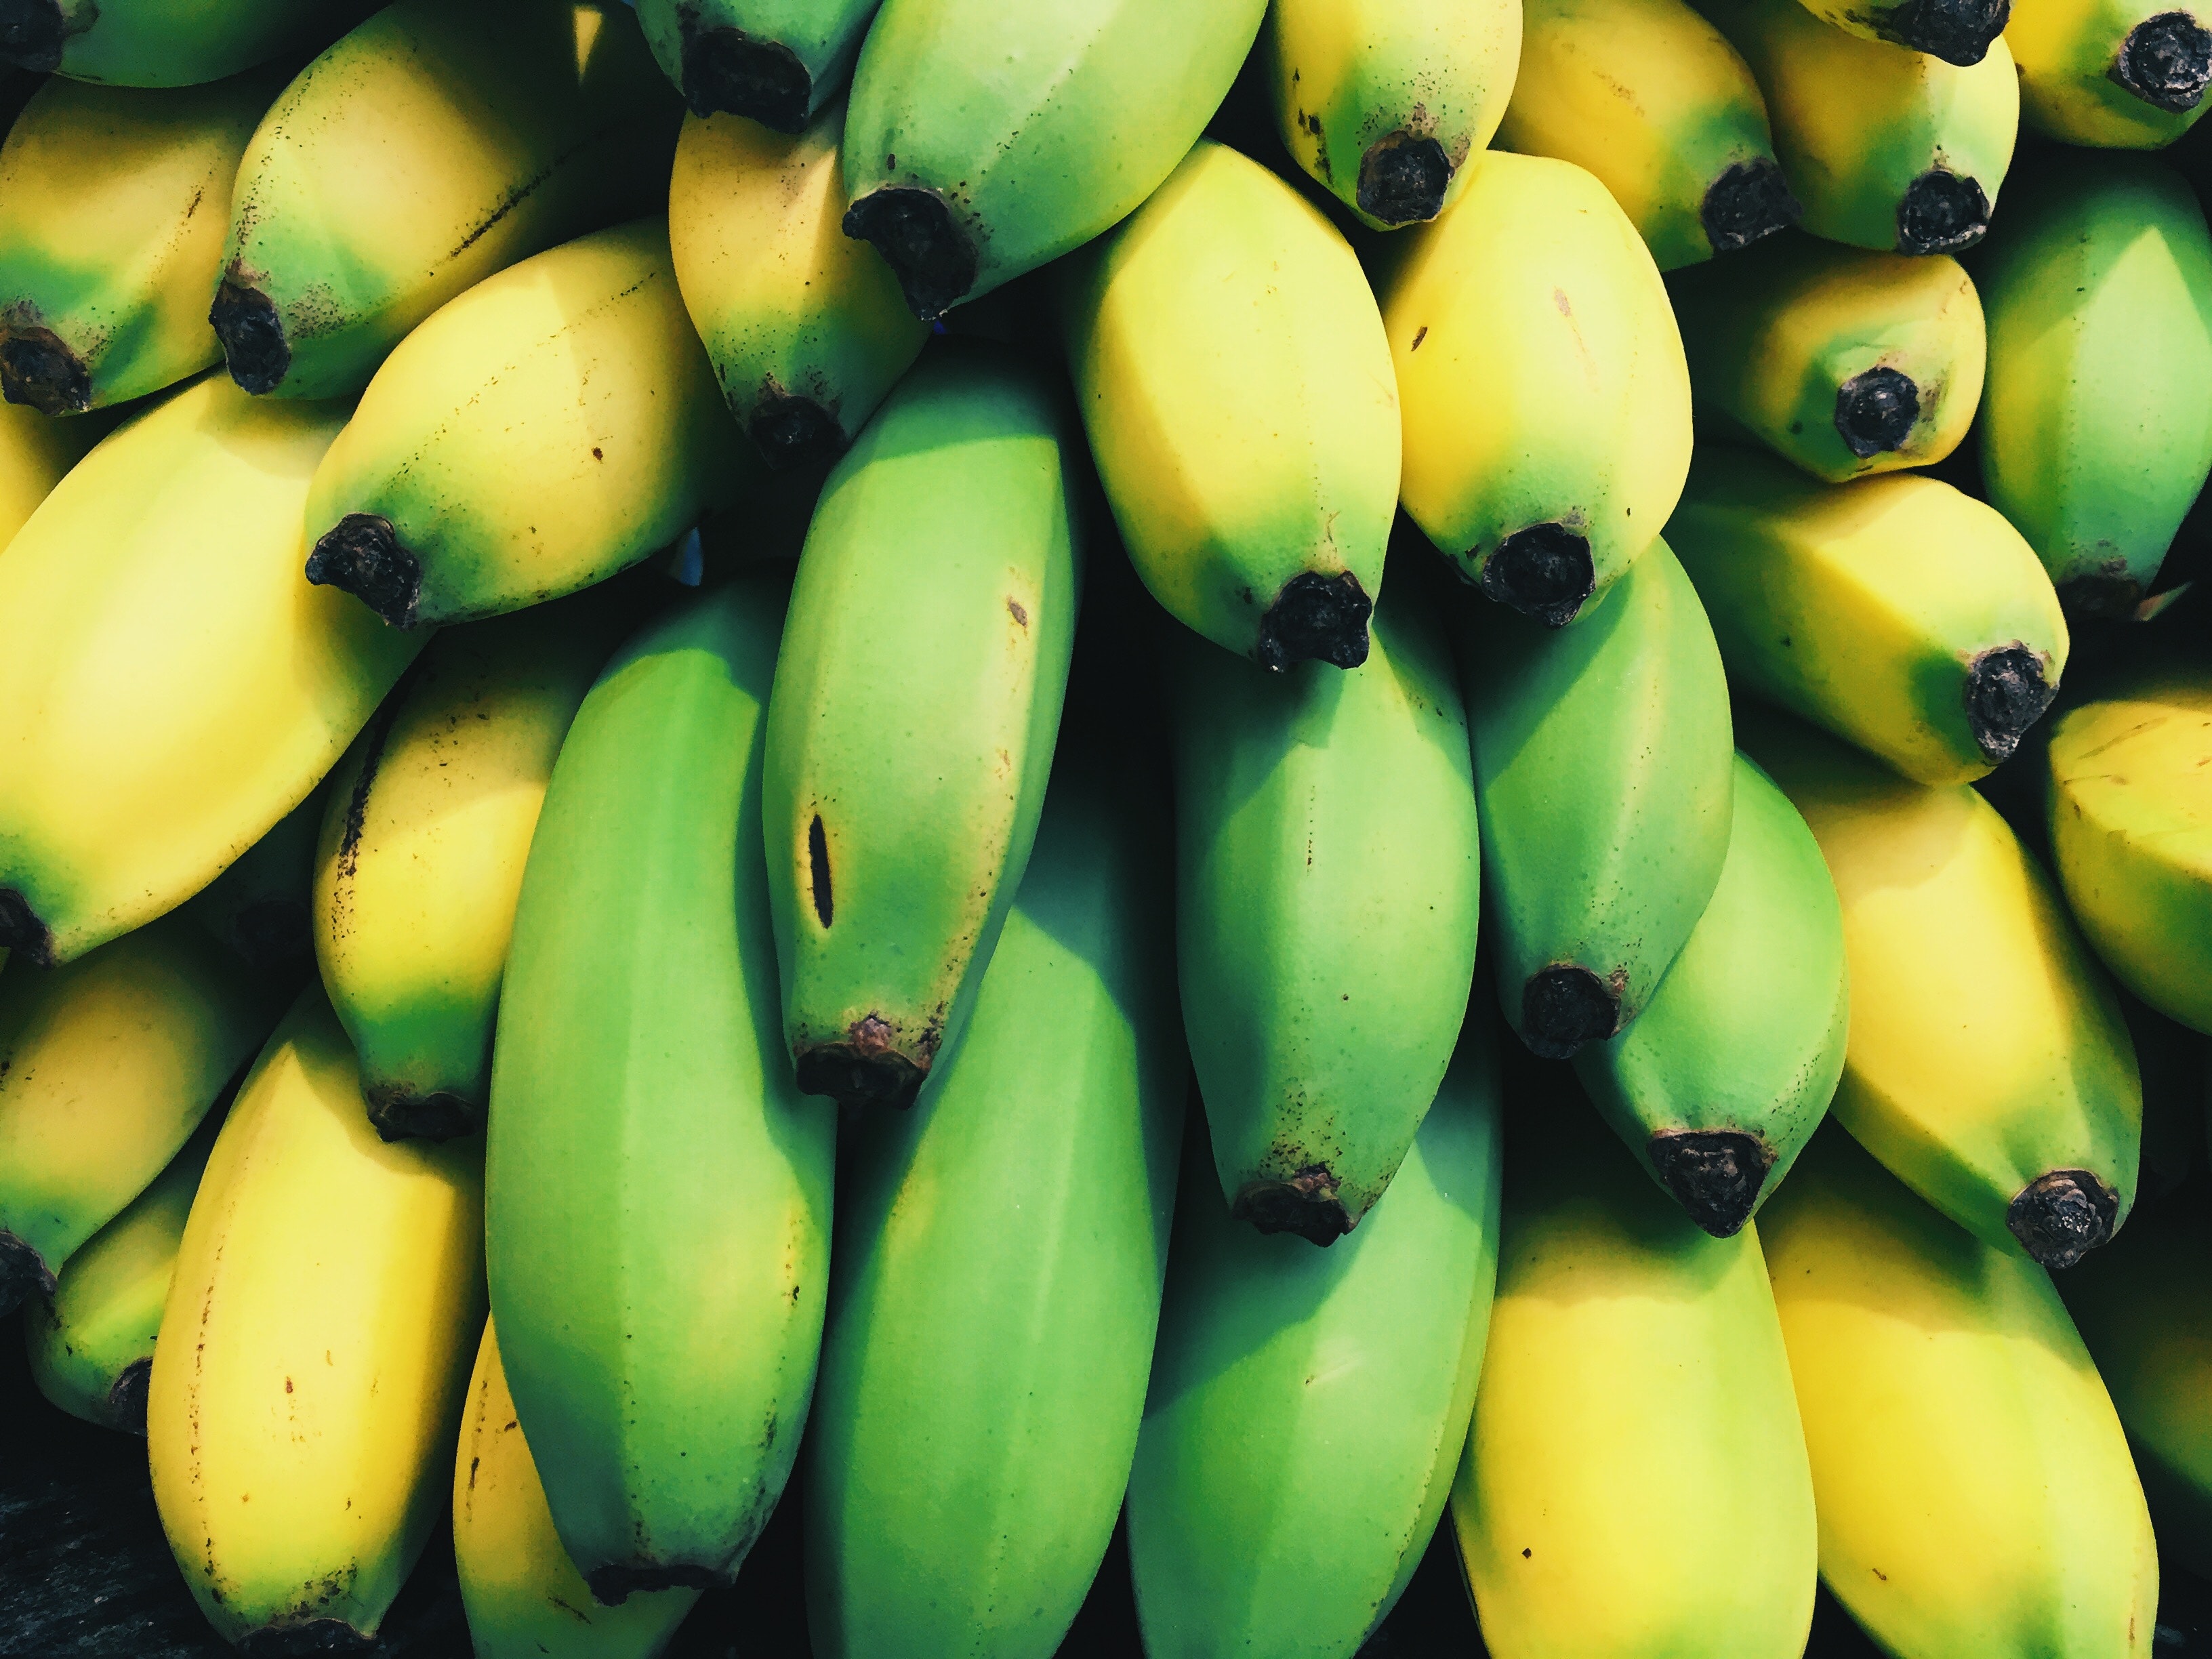 मधुमेहाच्या रूग्णांनी थोडीशी हिरवी केळी खाणे केव्हाही चांगले असते कारण त्यांचा जीआय पिकलेल्या केळ्यांच्या तुलनेत कमी असतो.